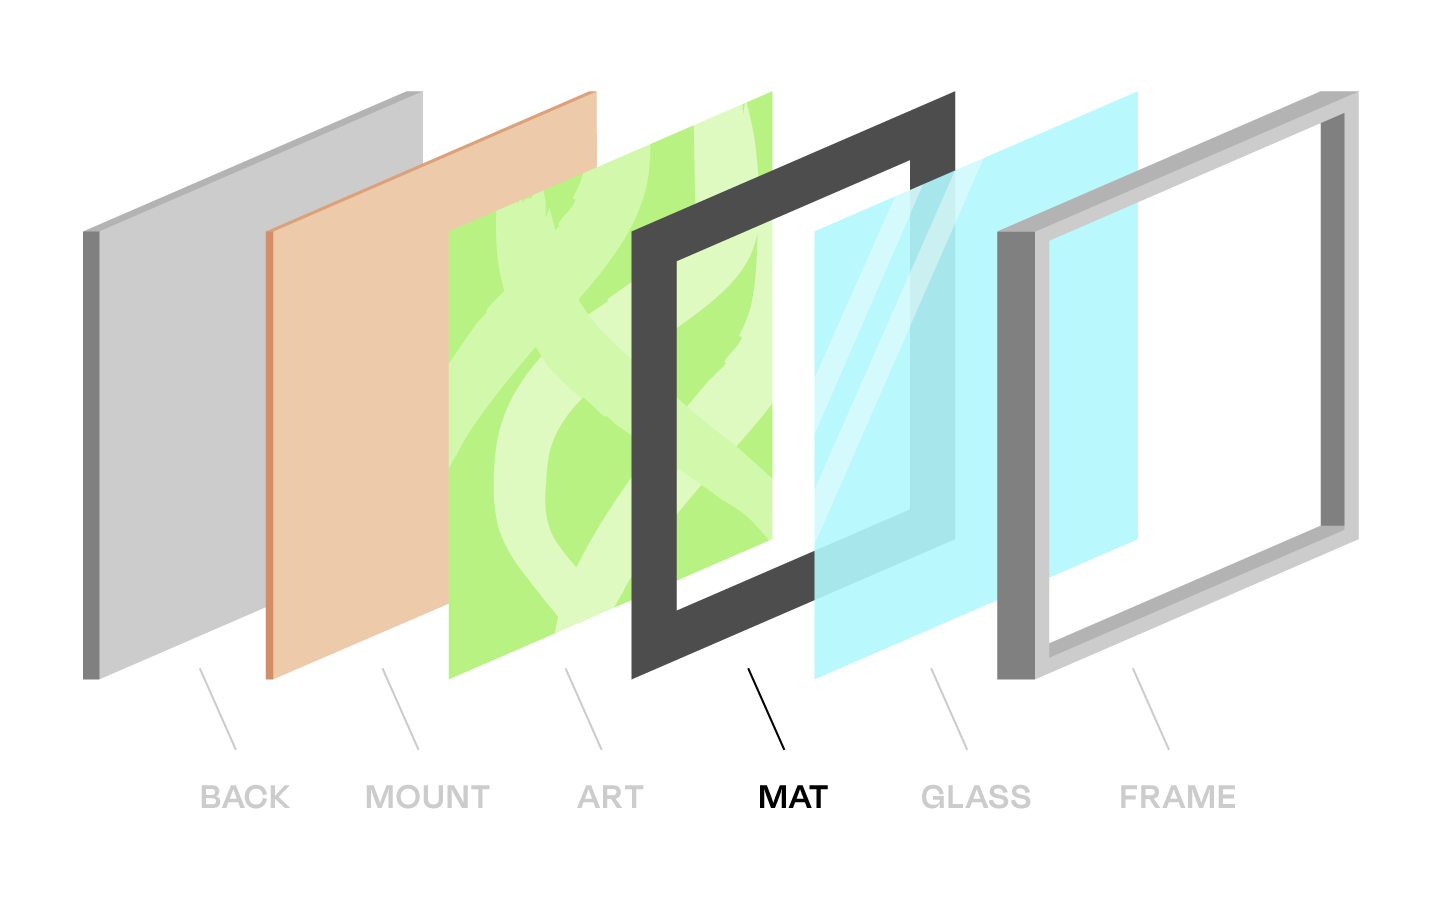 Back, mount, art, mat, glass, frame layers